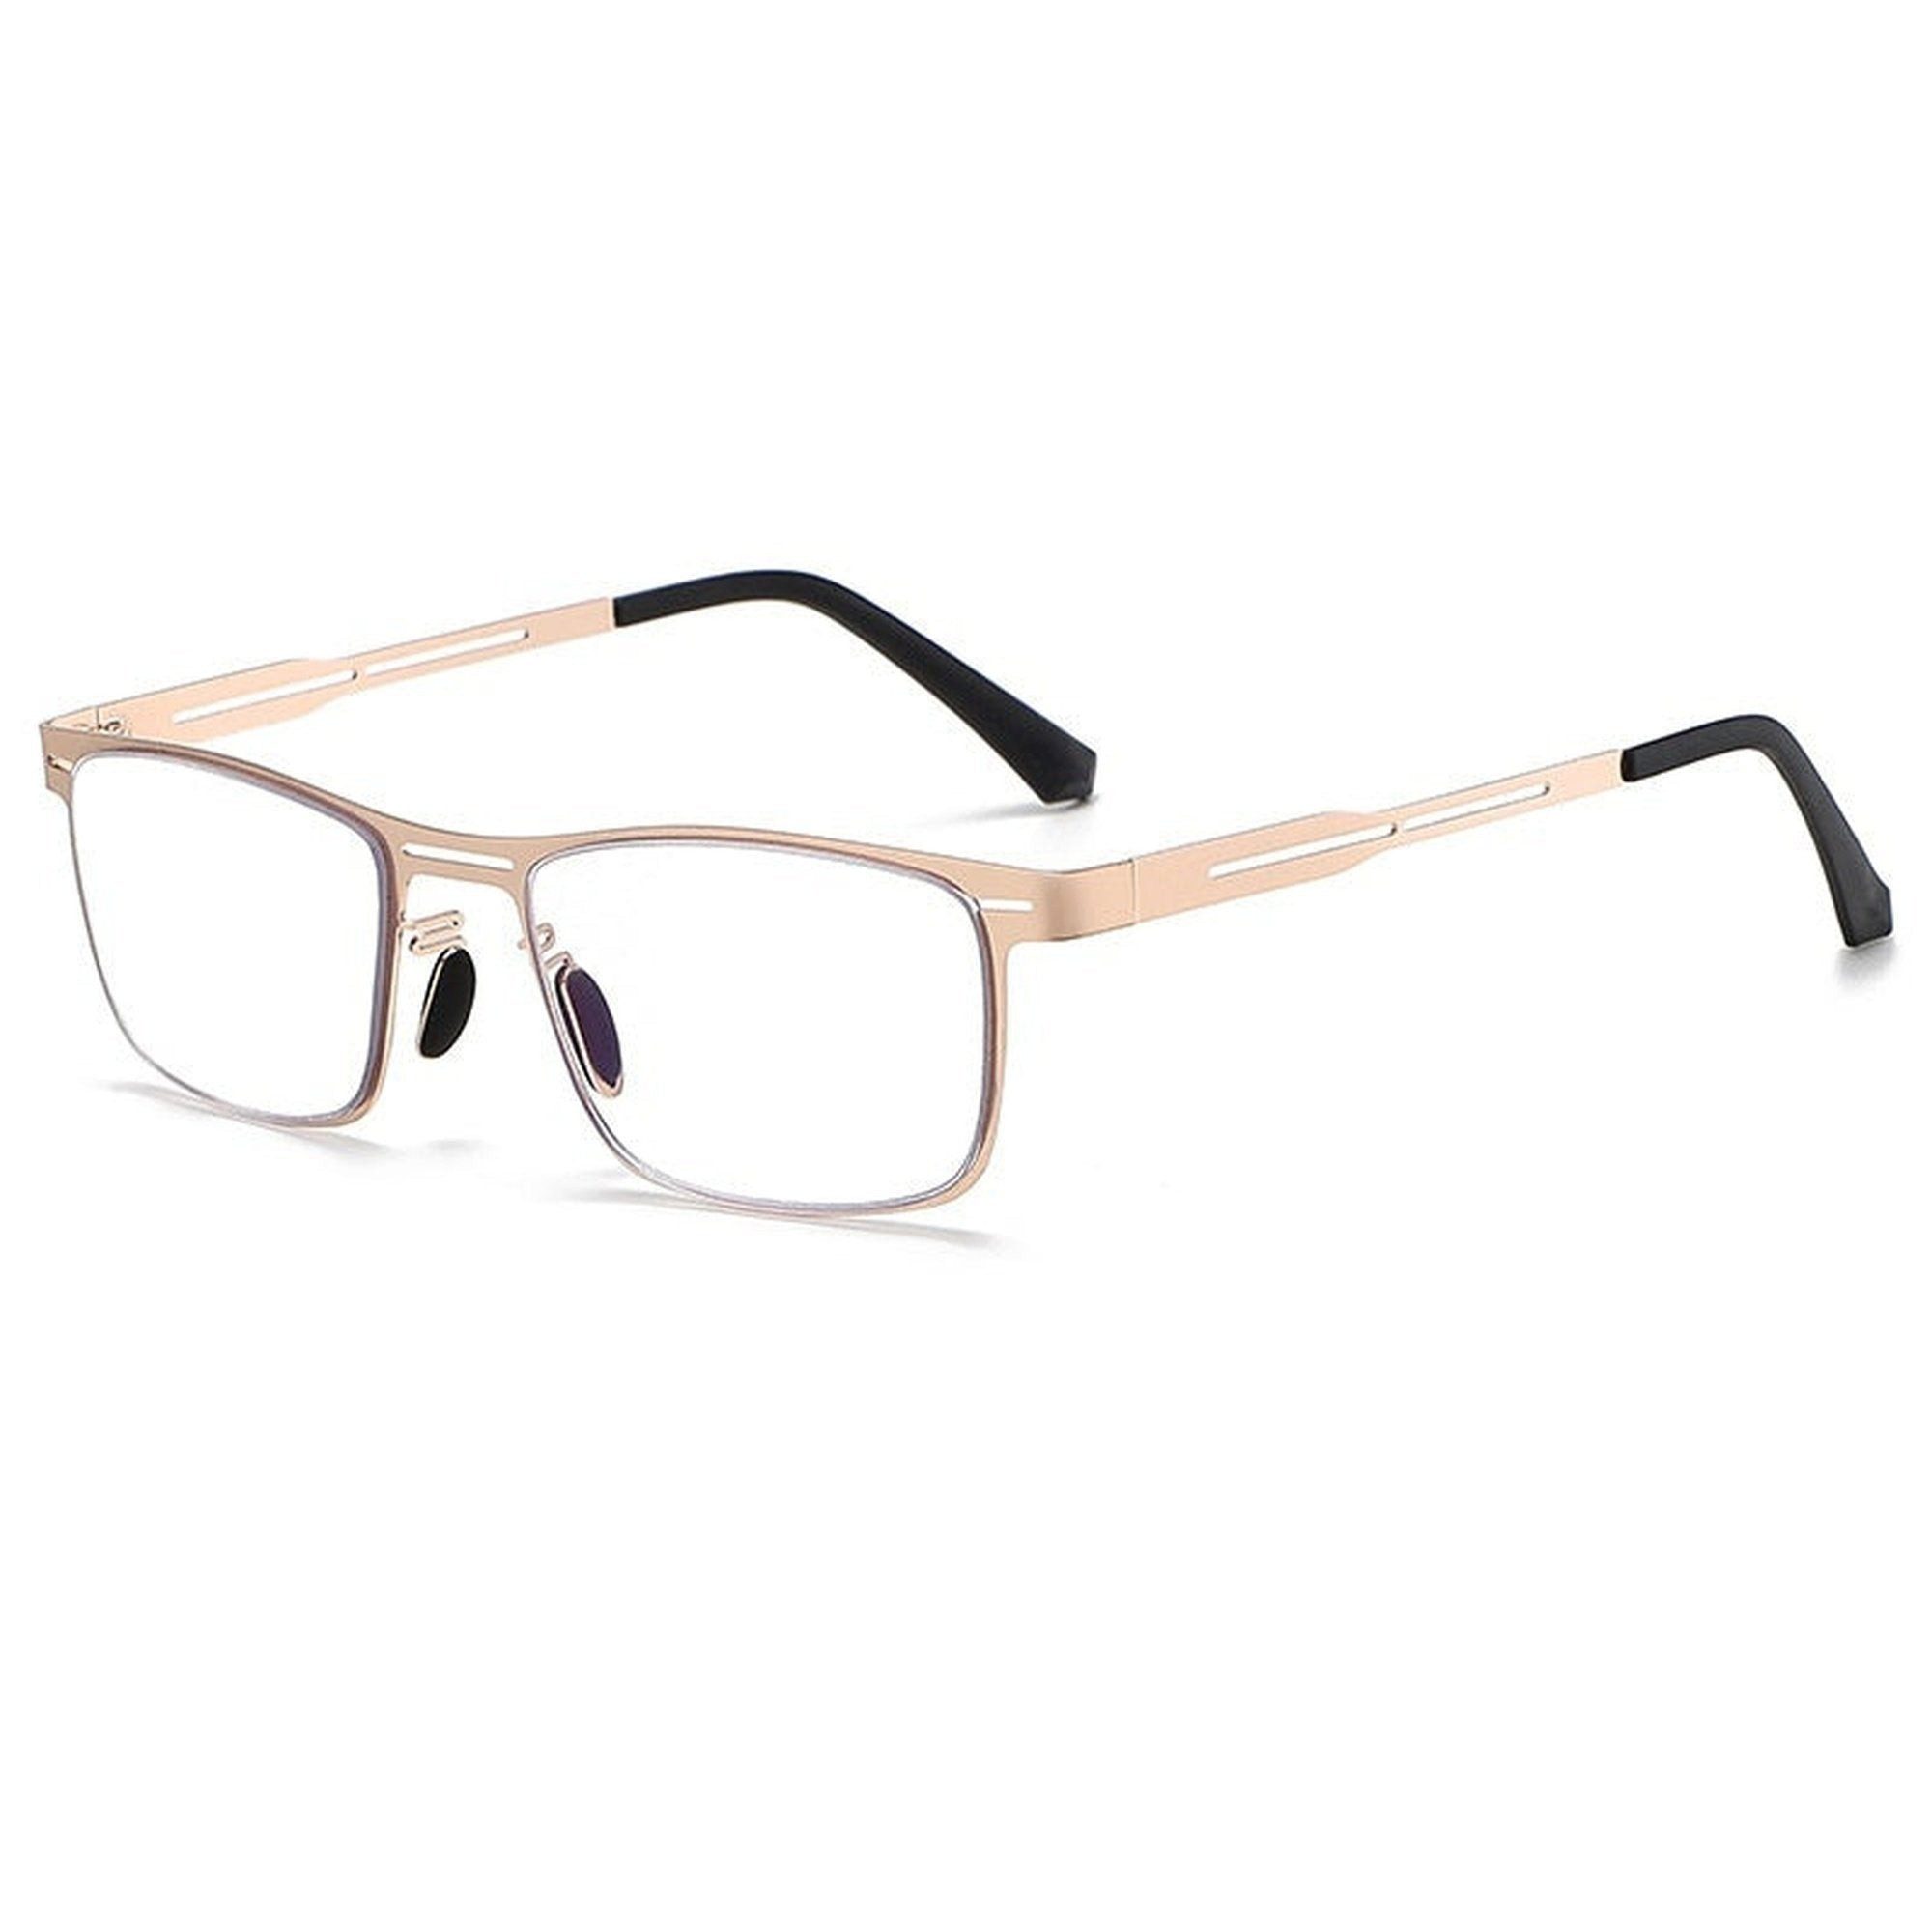 YRIIOMO Lesebrille Nicht verschreibungspflichtige Alterssichtigkeitsbrille, Blaulichtschutzbrille für Männer, hochauflösende Lesebrille.